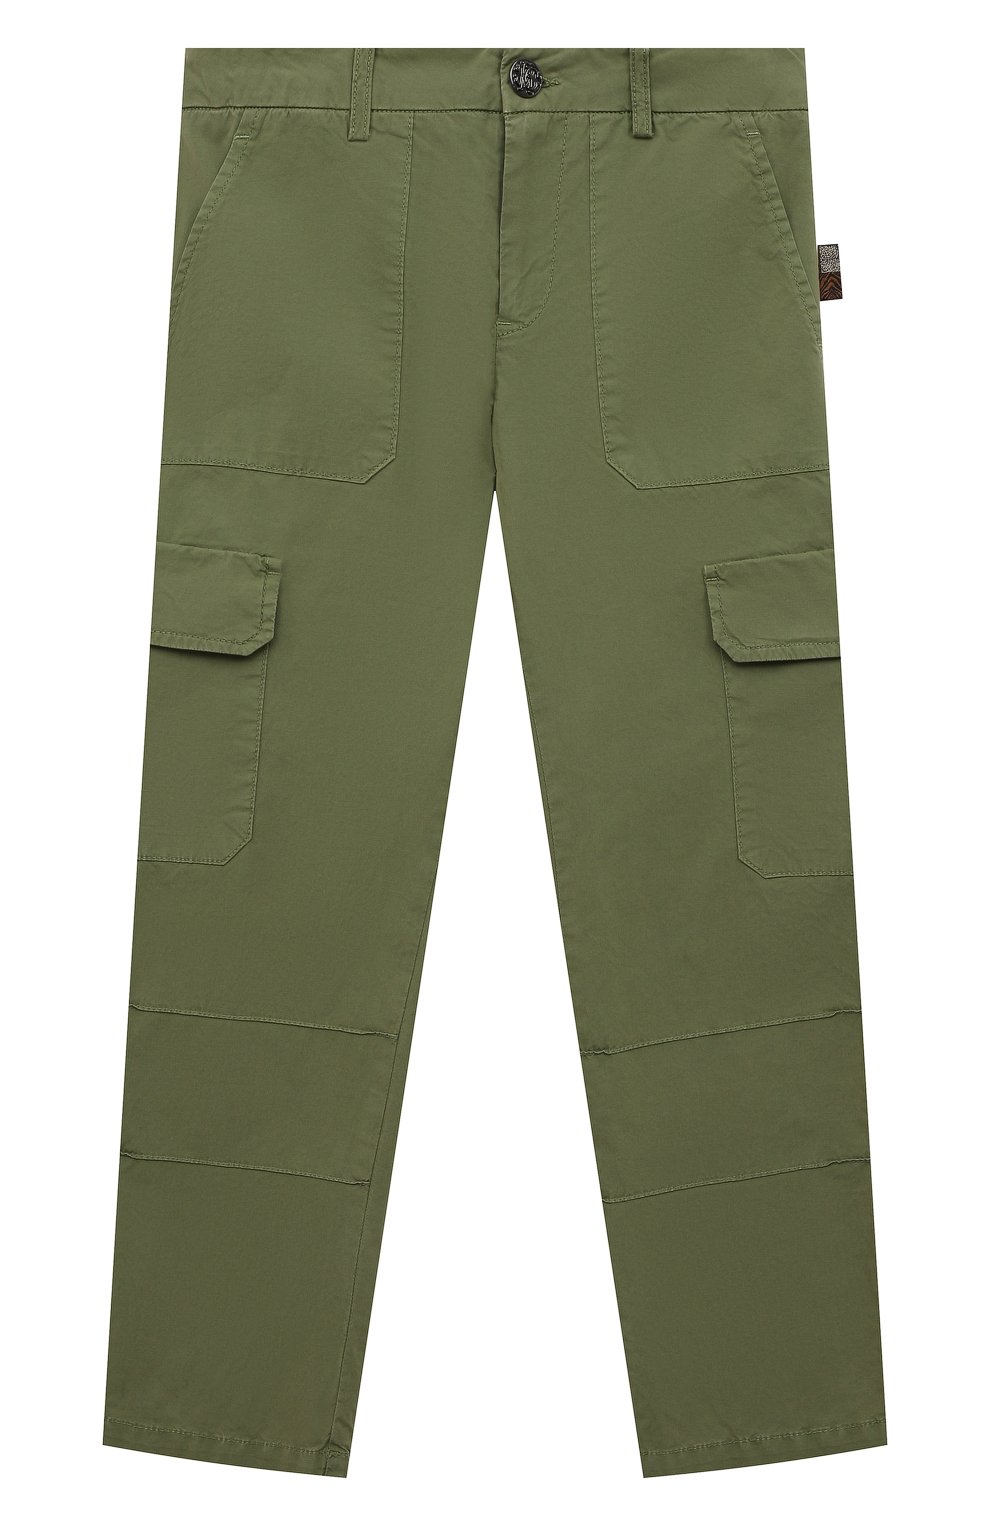 Хлопковые брюки Roberto Cavalli QJT232/CE035/12A-14A